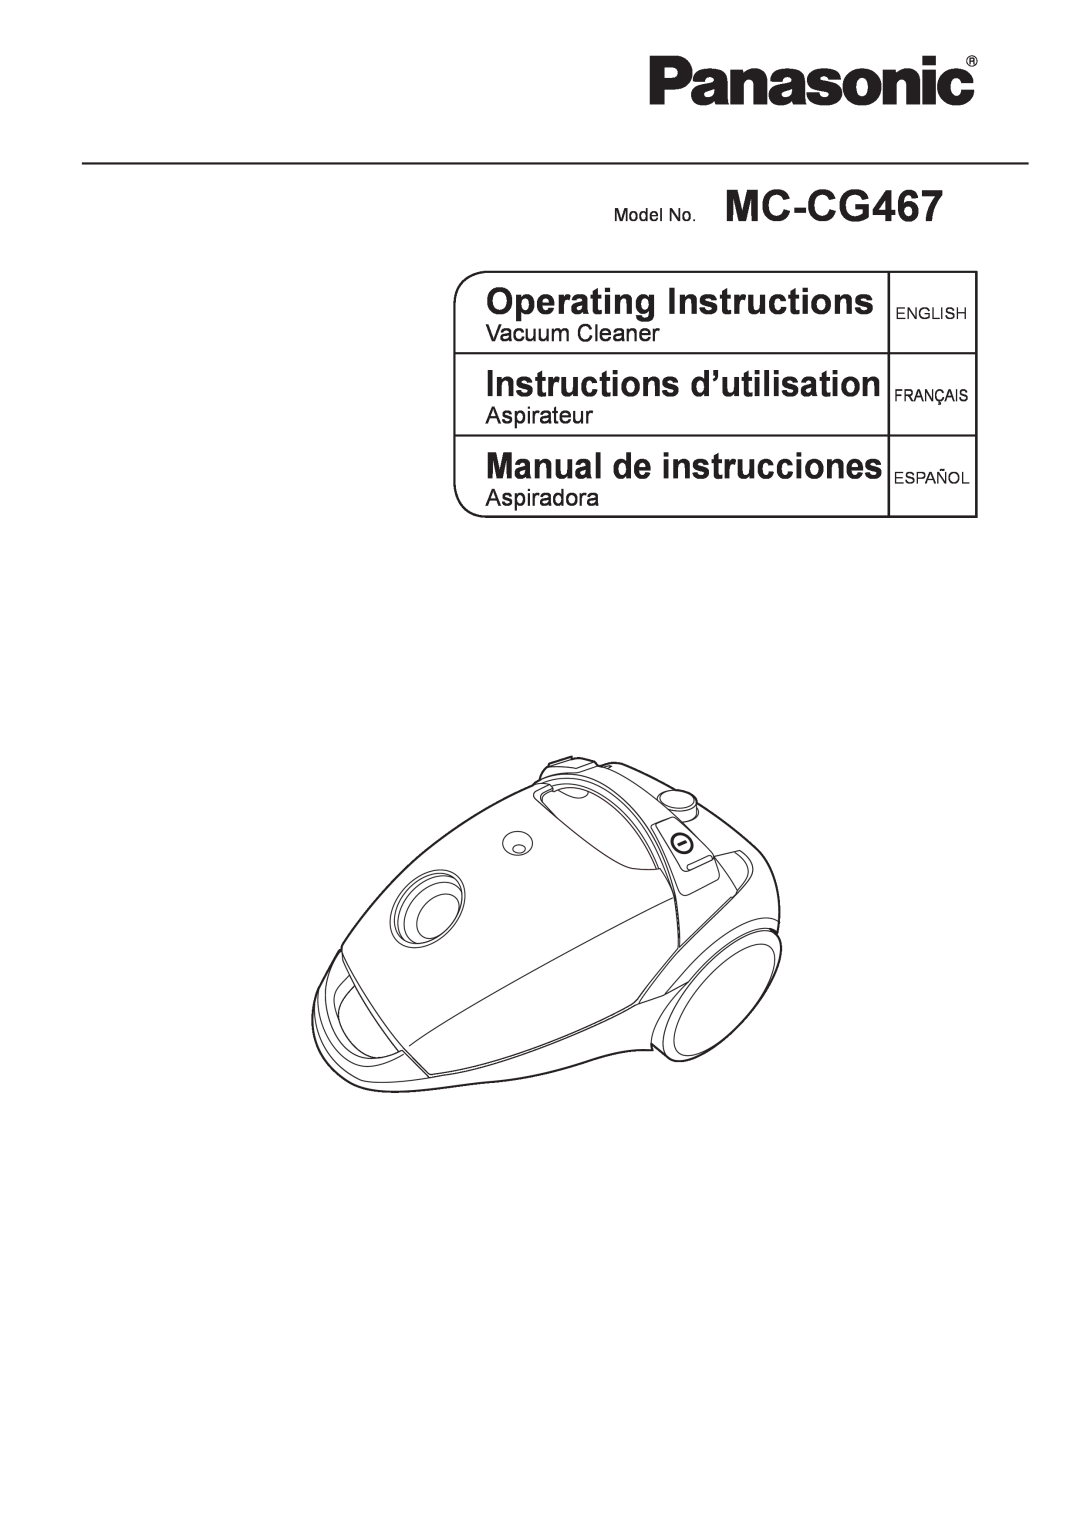 Panasonic manual Model No. MC-CG467, Operating Instructions, Instructions d’utilisation, Manual de instrucciones 